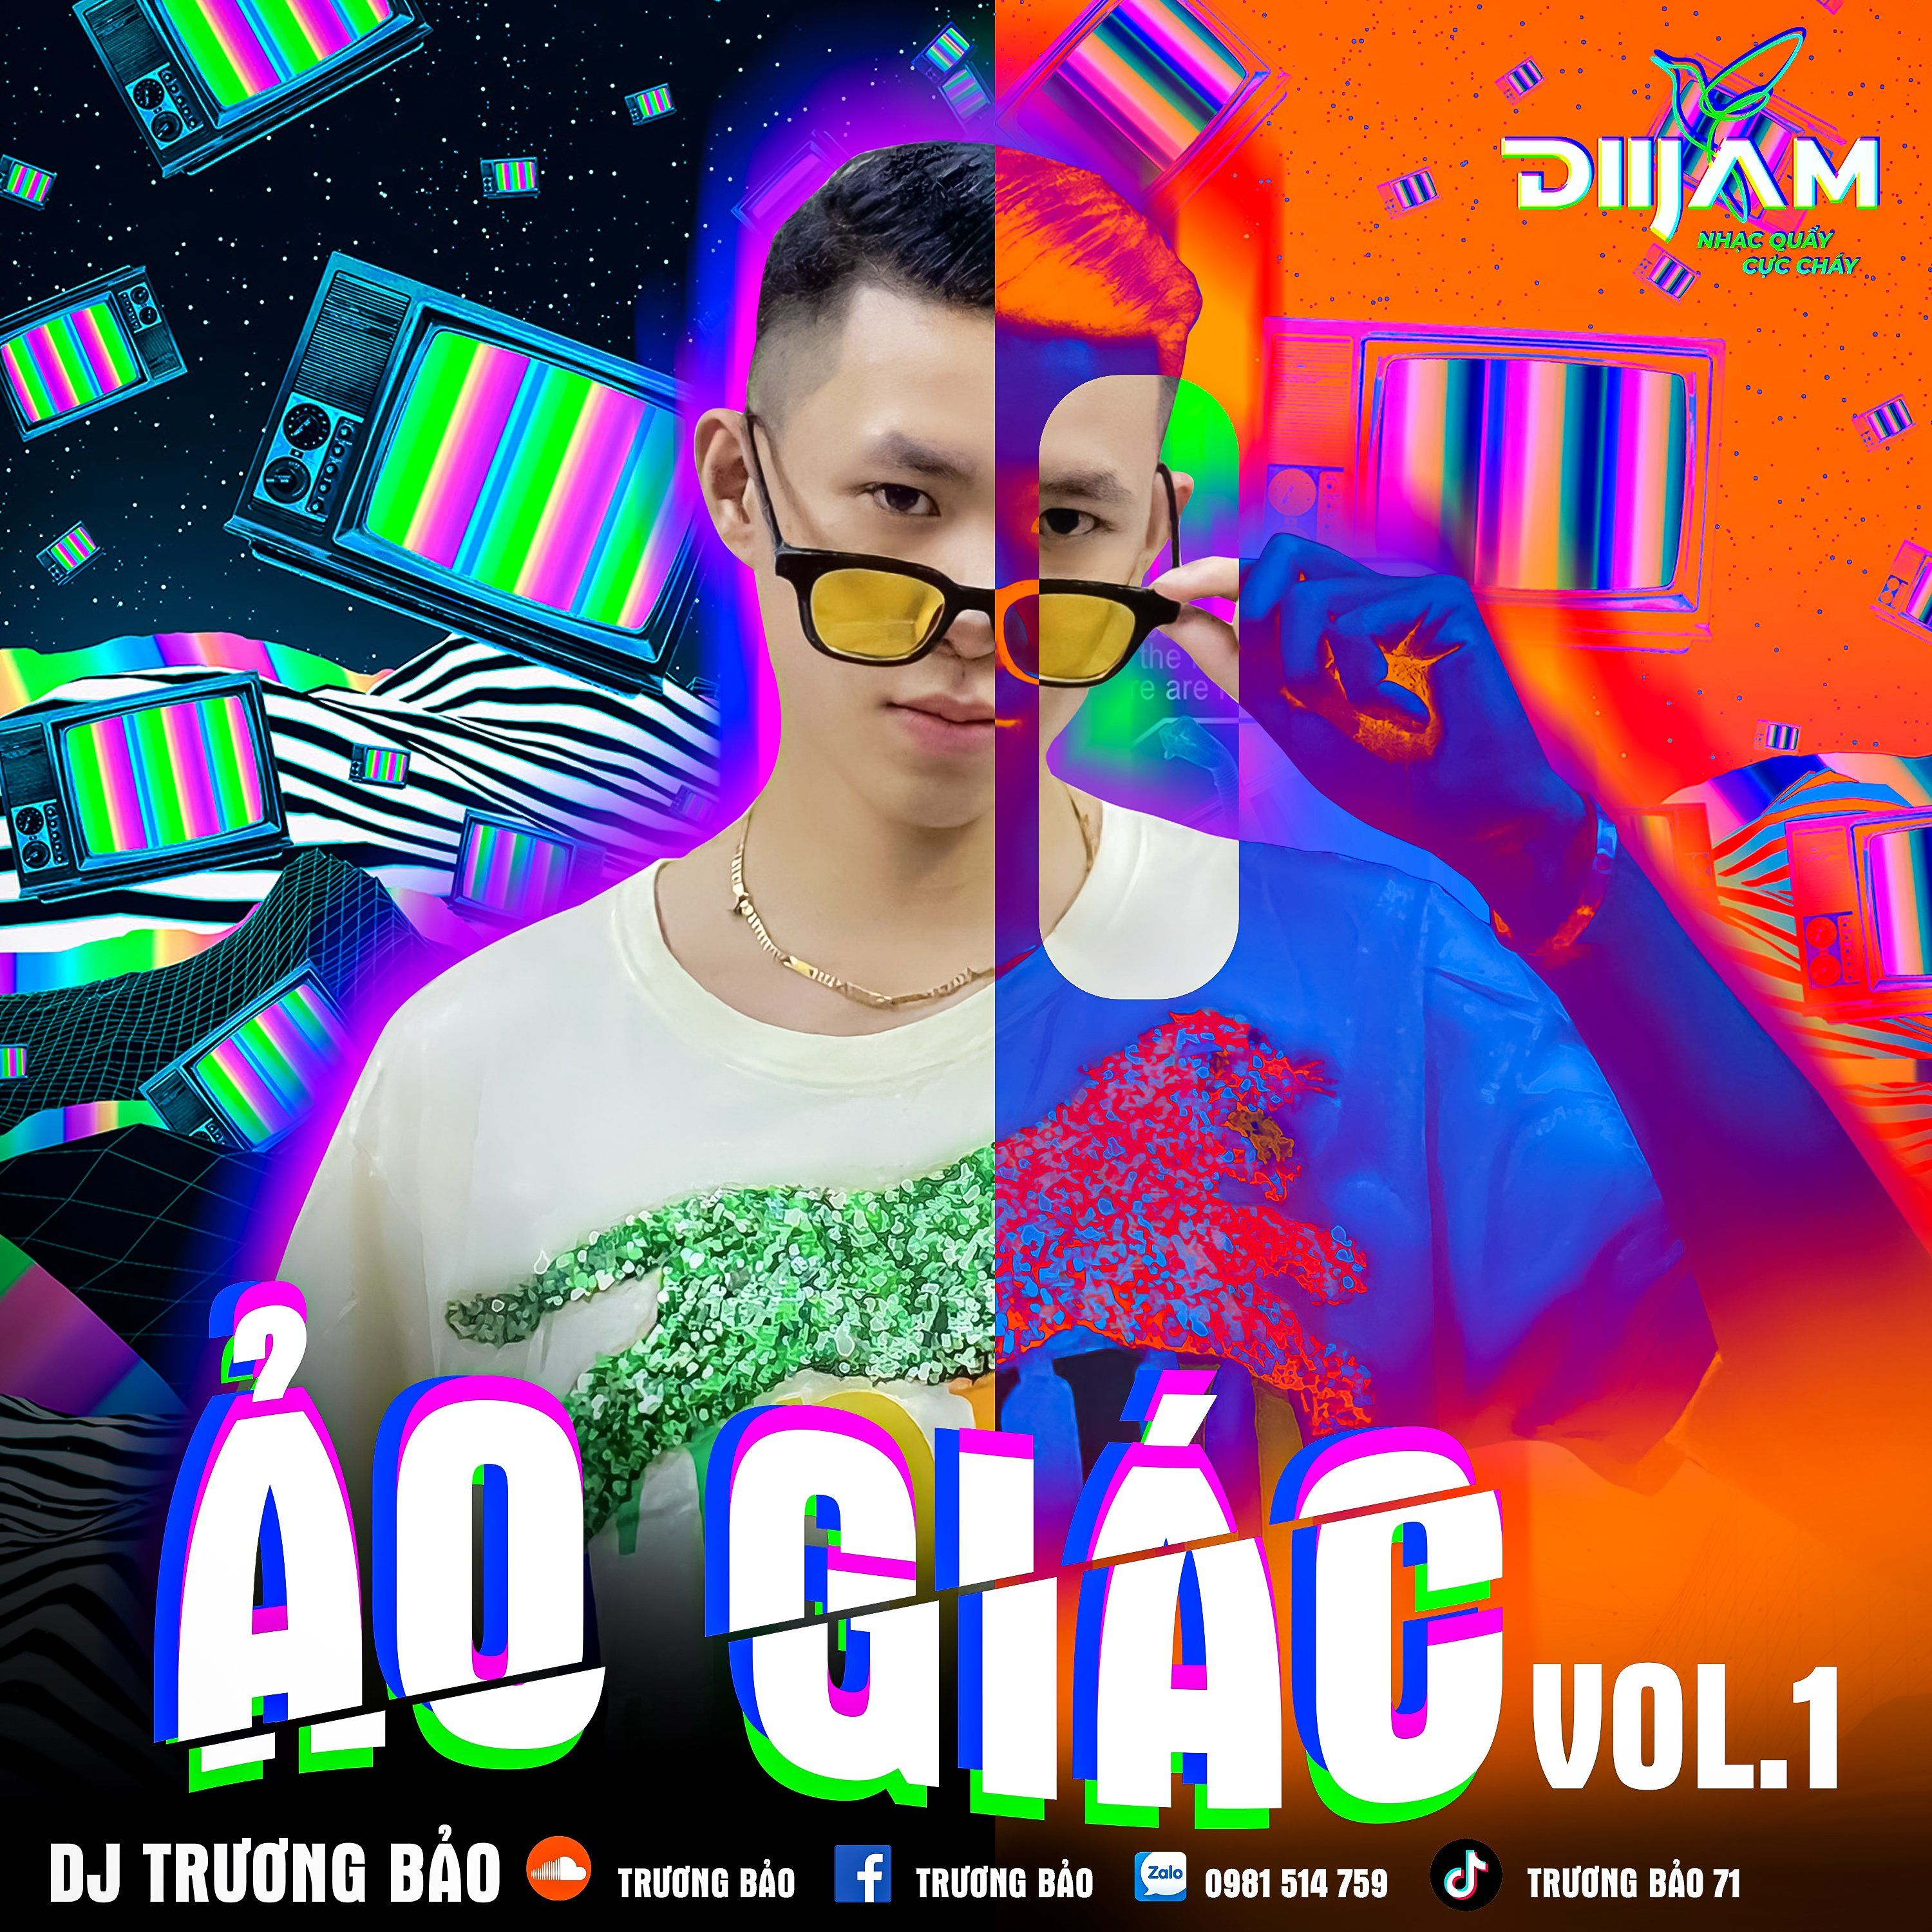 Sækja Ảo Giác Vol 1 - DJ Trương Bảo (Nonstop Diijam)